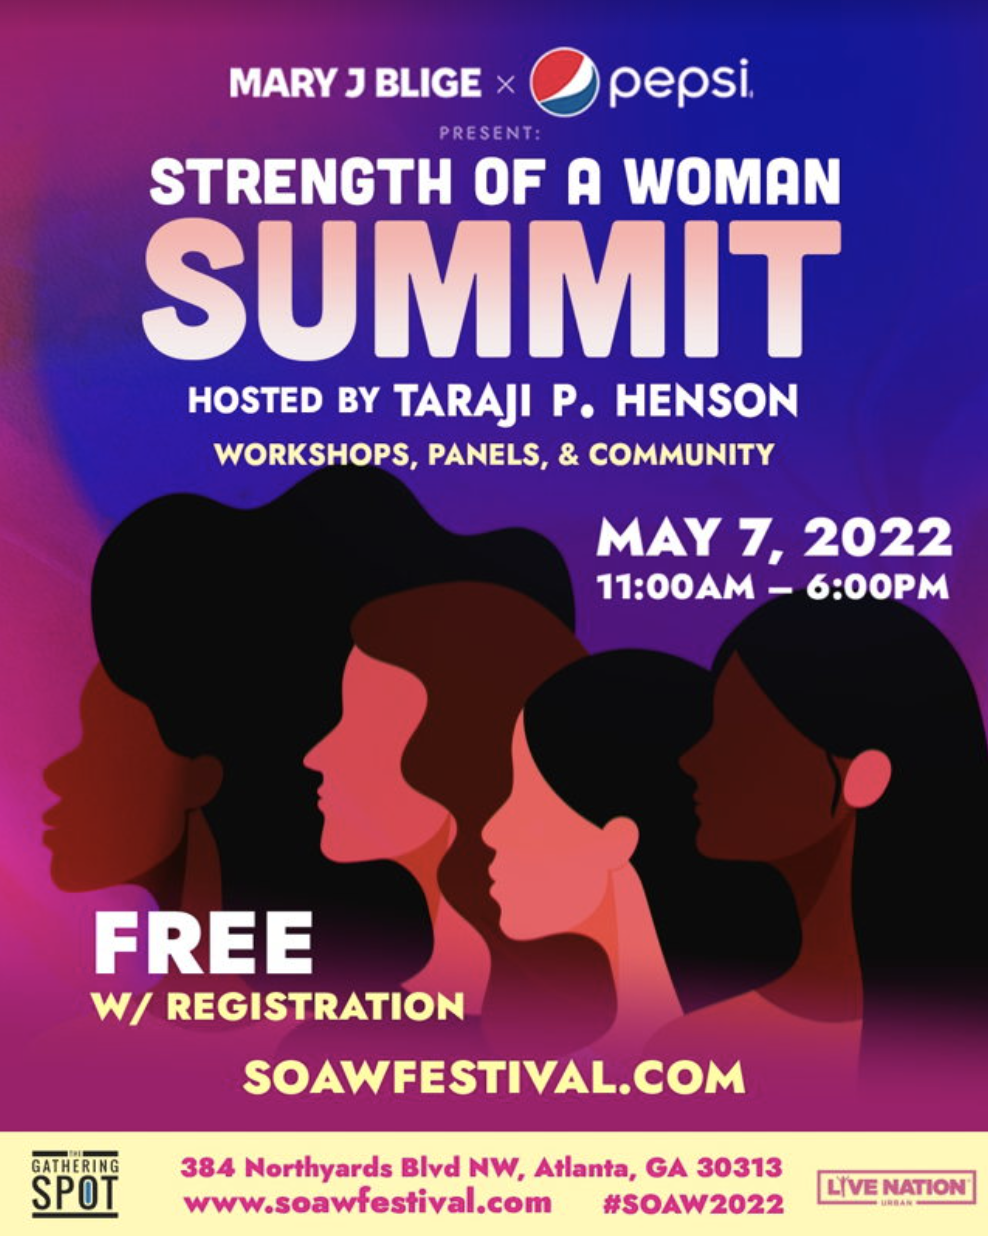 Taraji P. Henson To Host Mary J. Blige's 'Strength Of A Woman Summit'